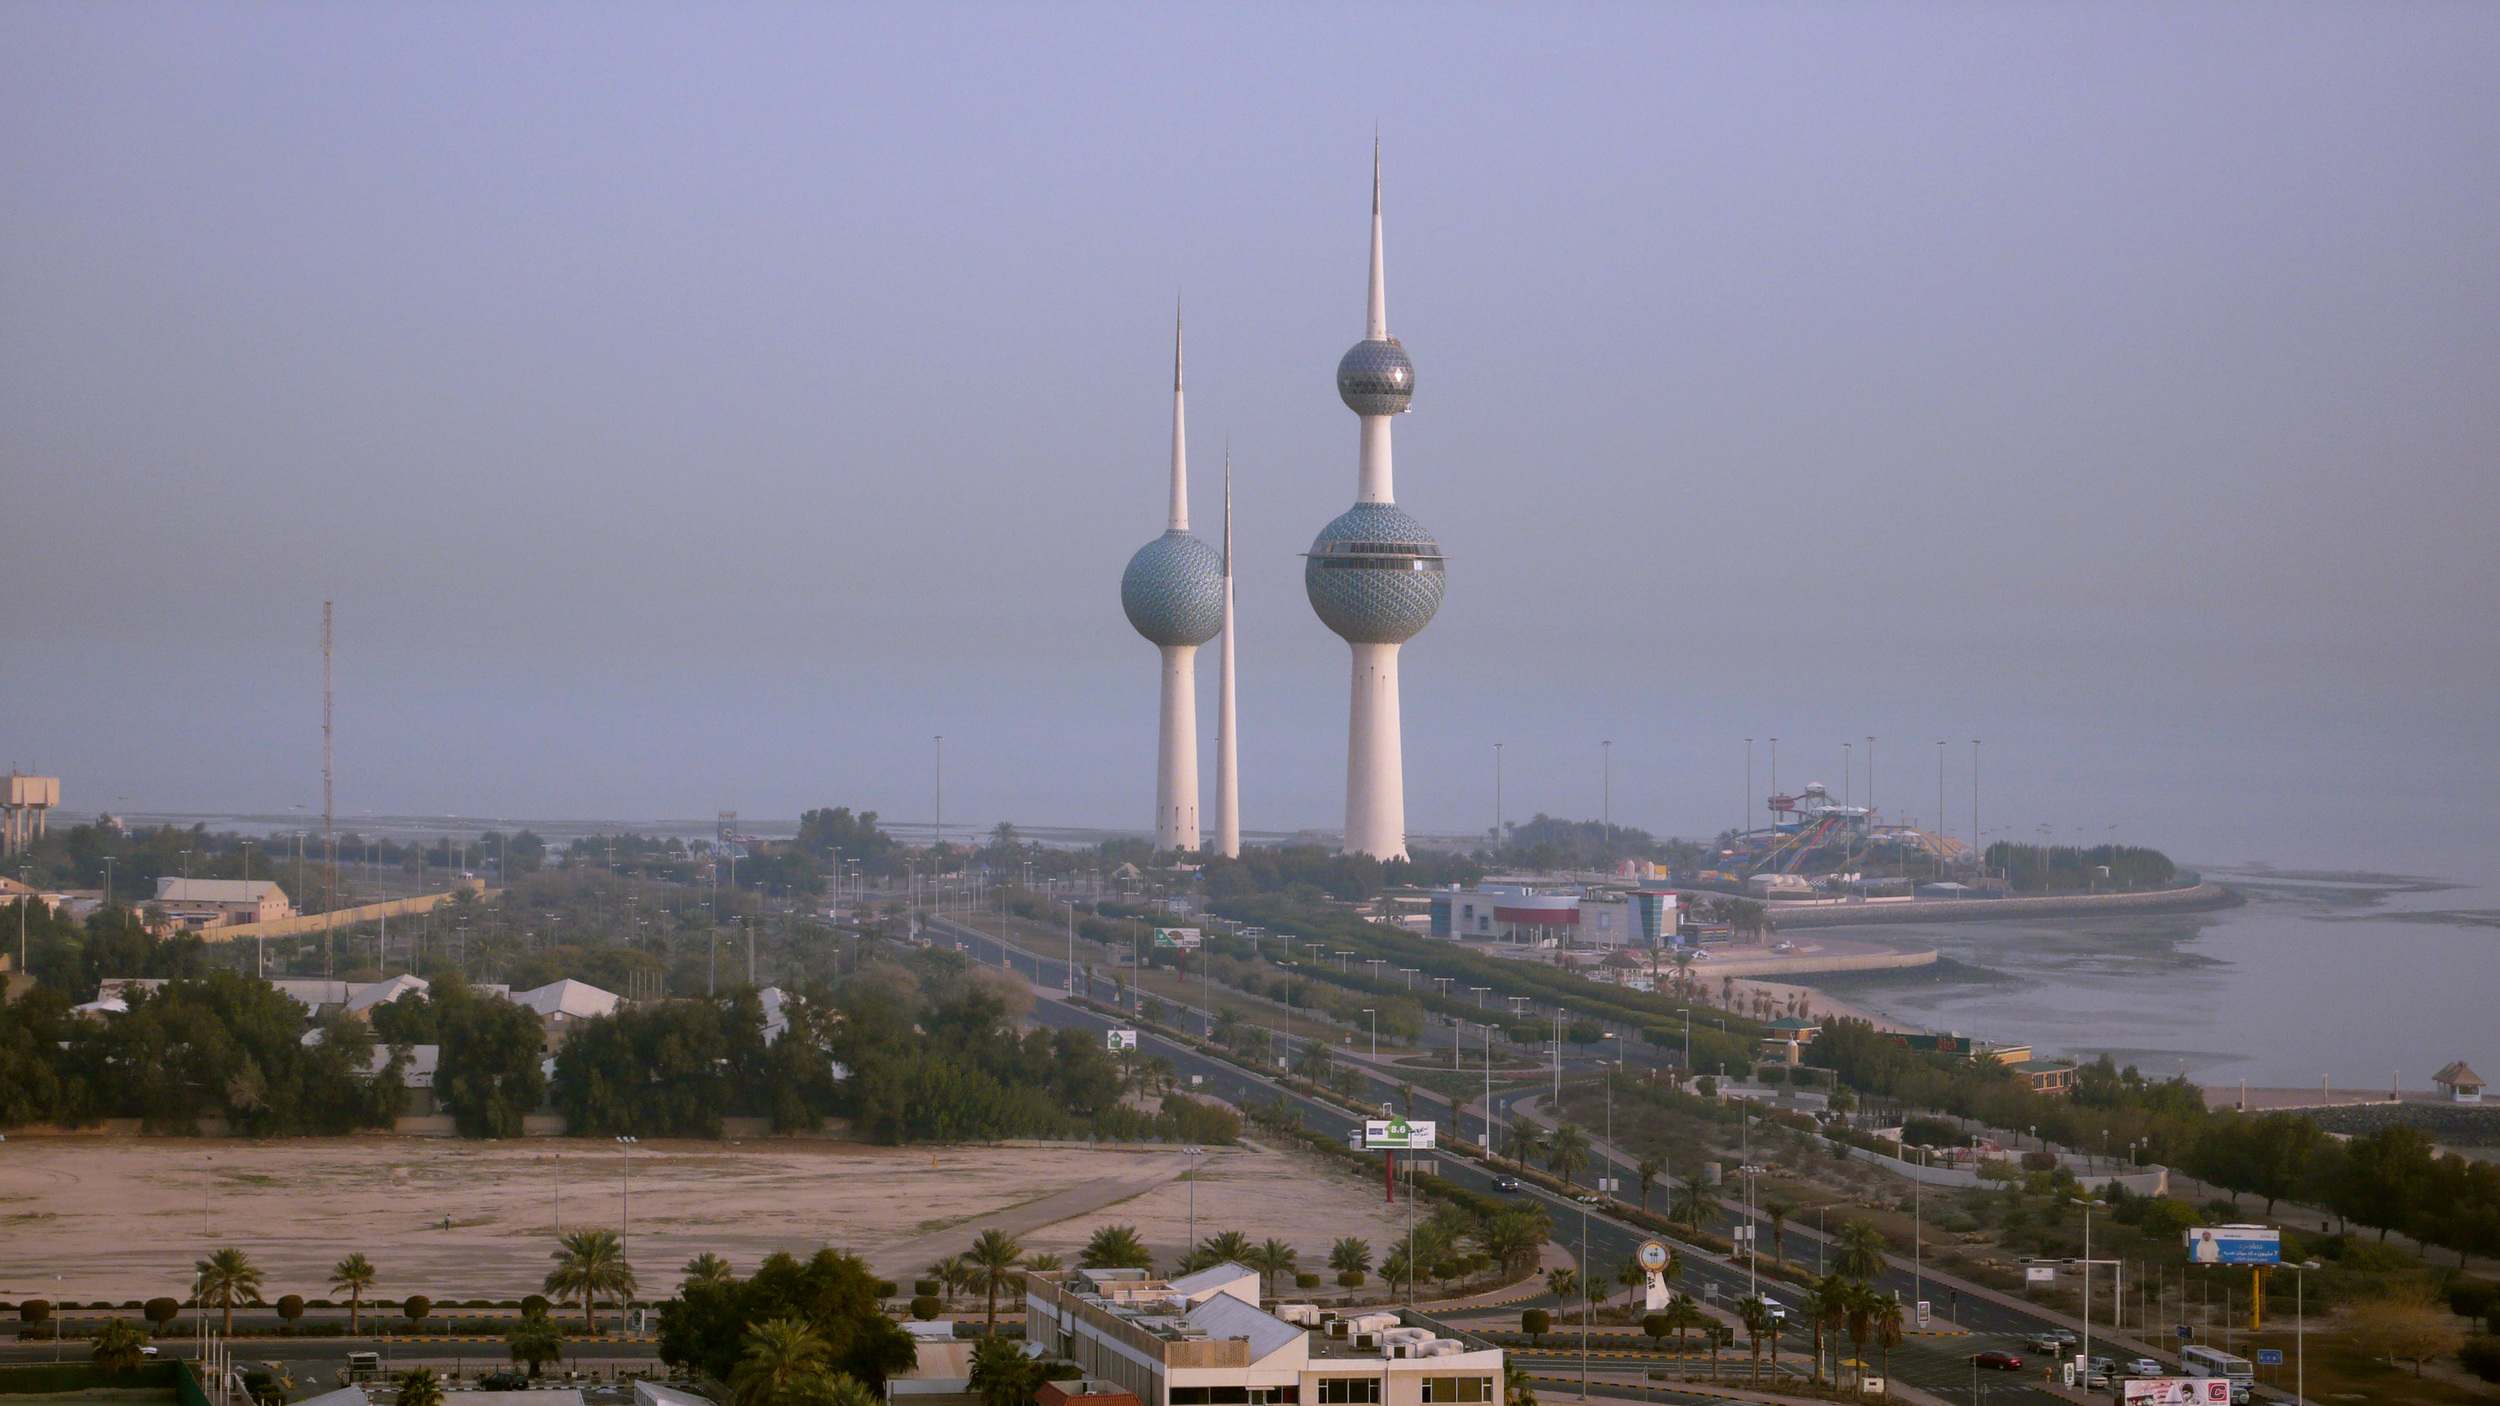  Kuwait Towers,  Kuwait 2008 